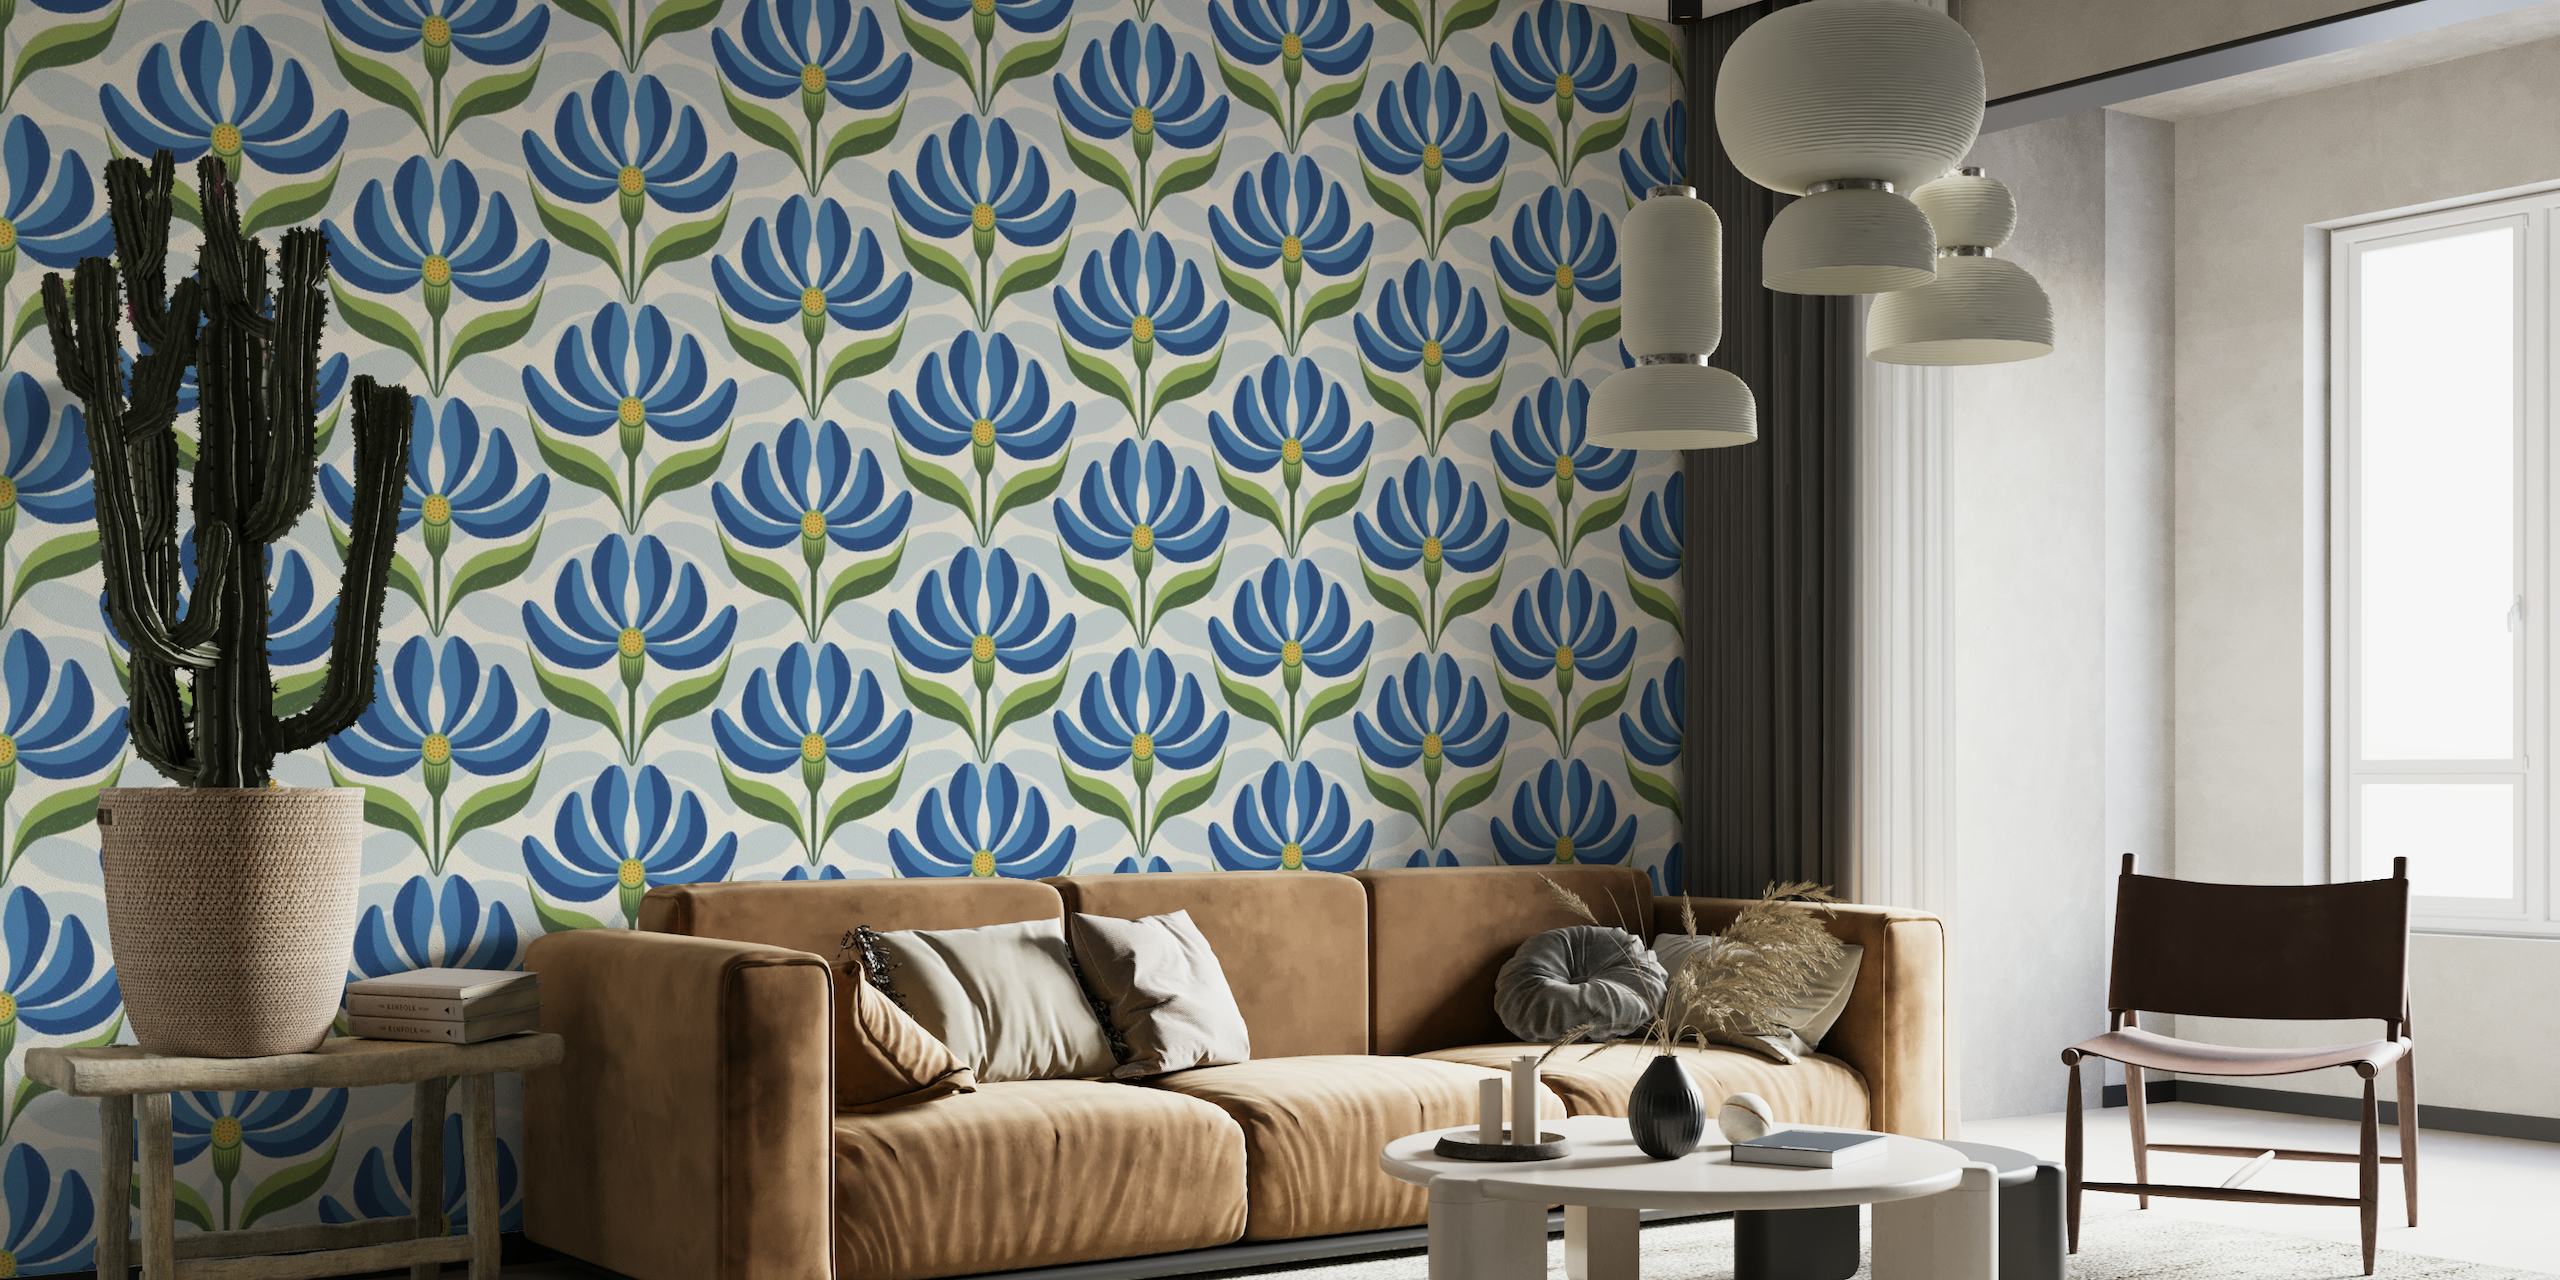 Padrão geométrico floral de inspiração vintage em azul royal, verde e marfim para mural de parede